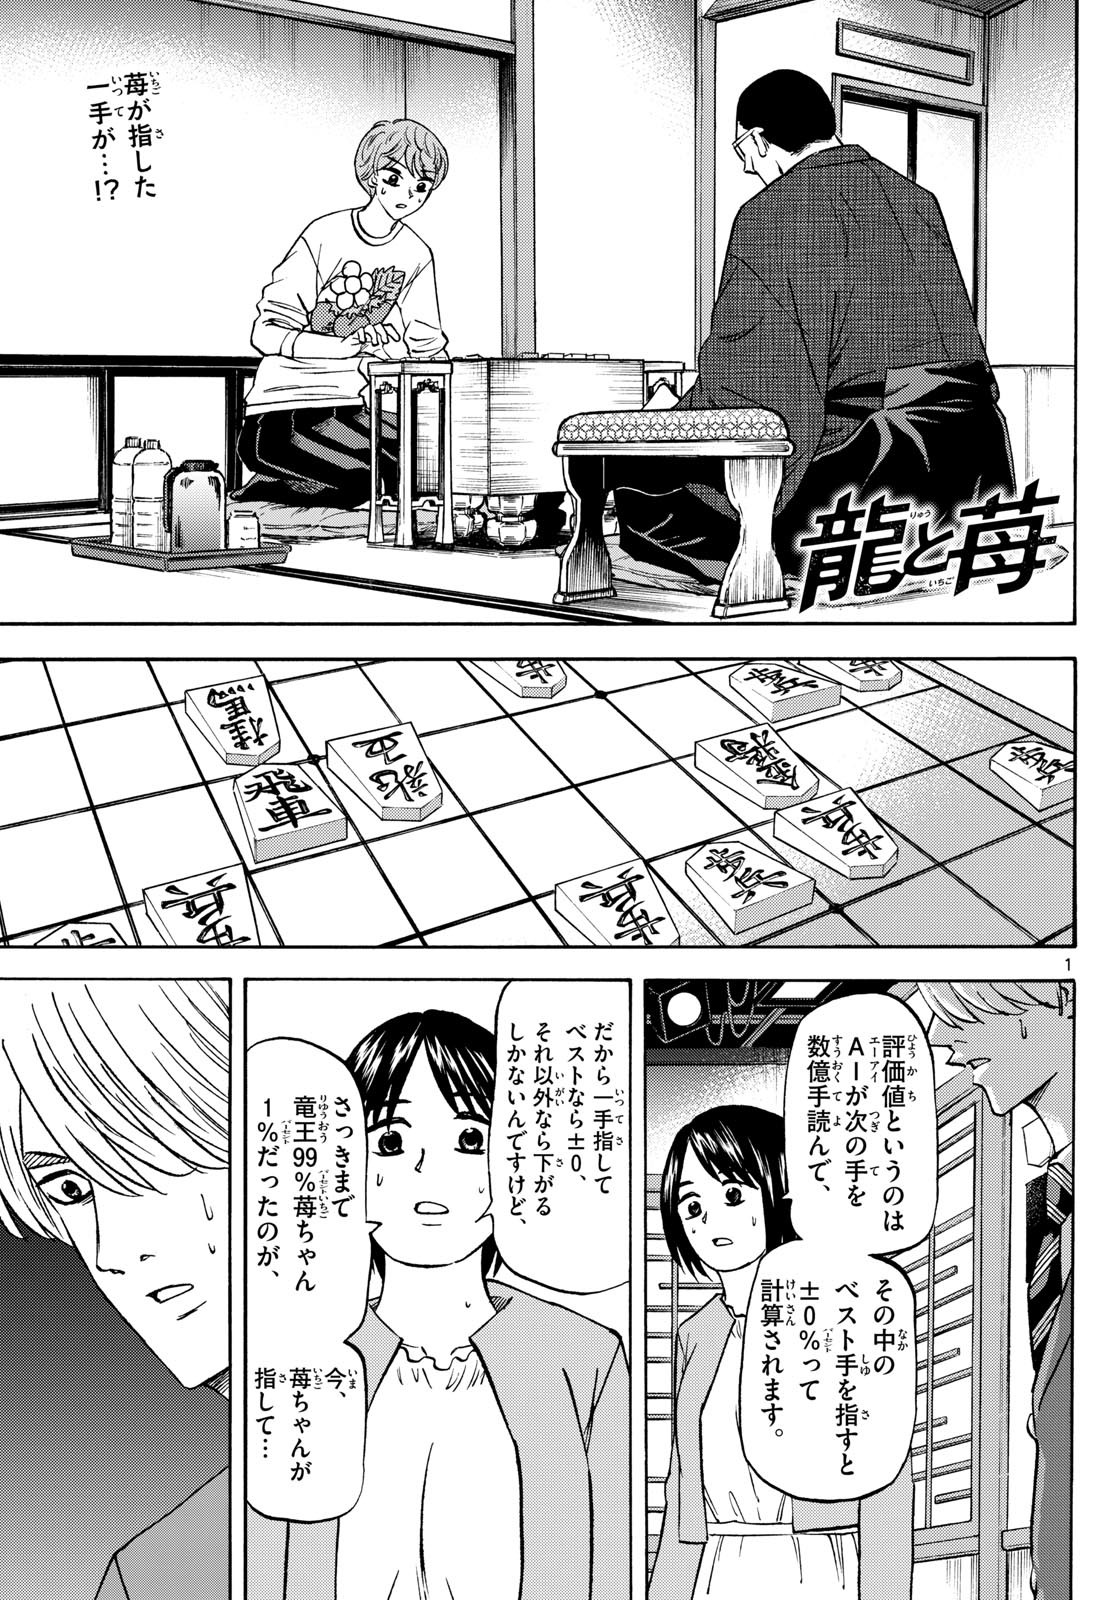 Ryu-to-Ichigo - Chapter 179 - Page 1